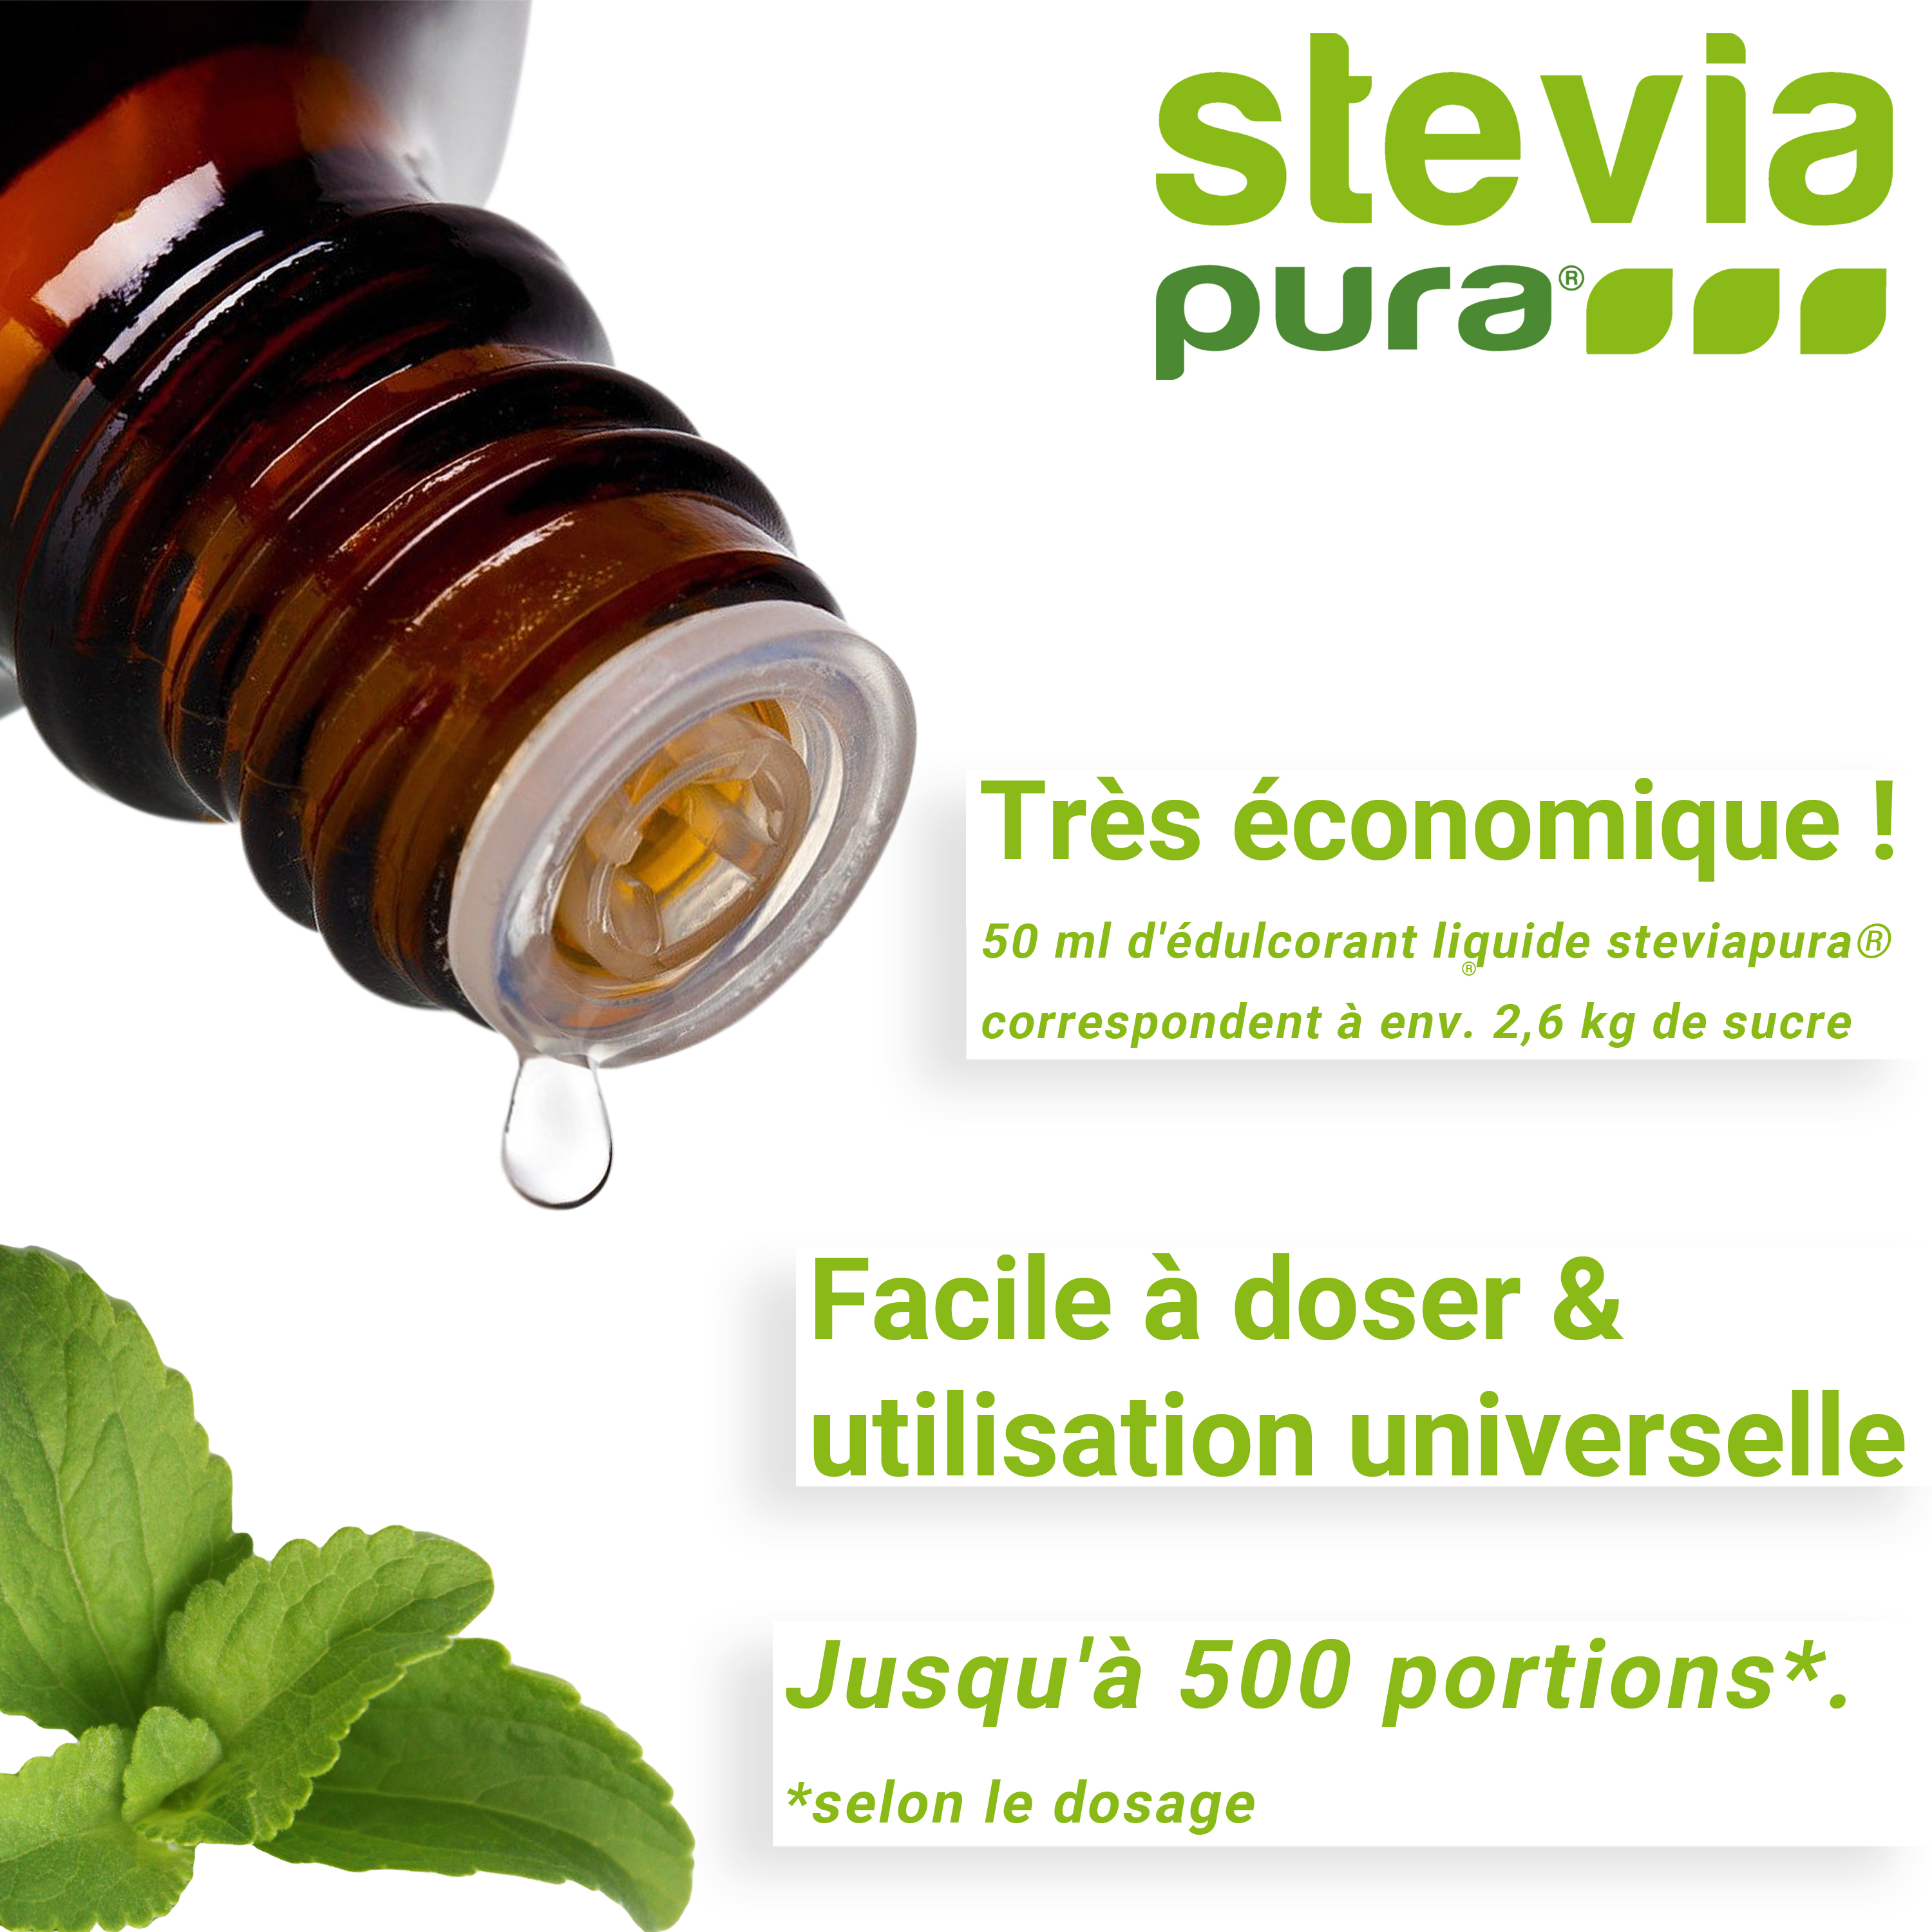 La Stévia Liquide est facile à doser et peut être utilisée de manière universelle.